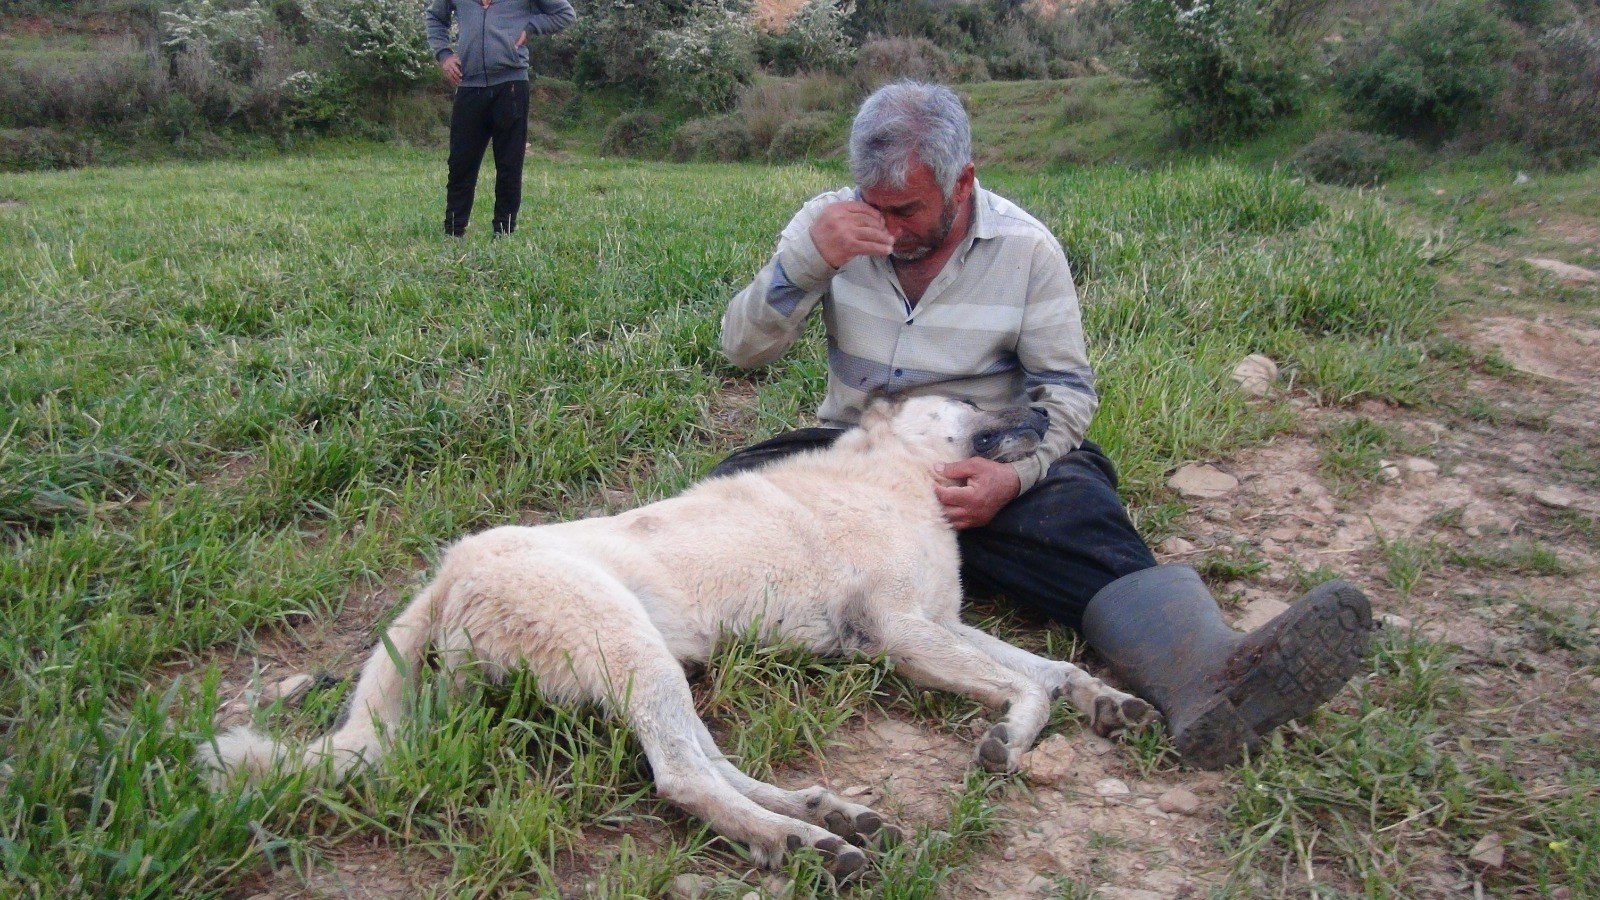 Antalya’da otlamakta olan koyunların başındaki çoban köpeği, tabanca ile vurularak öldürüldü.